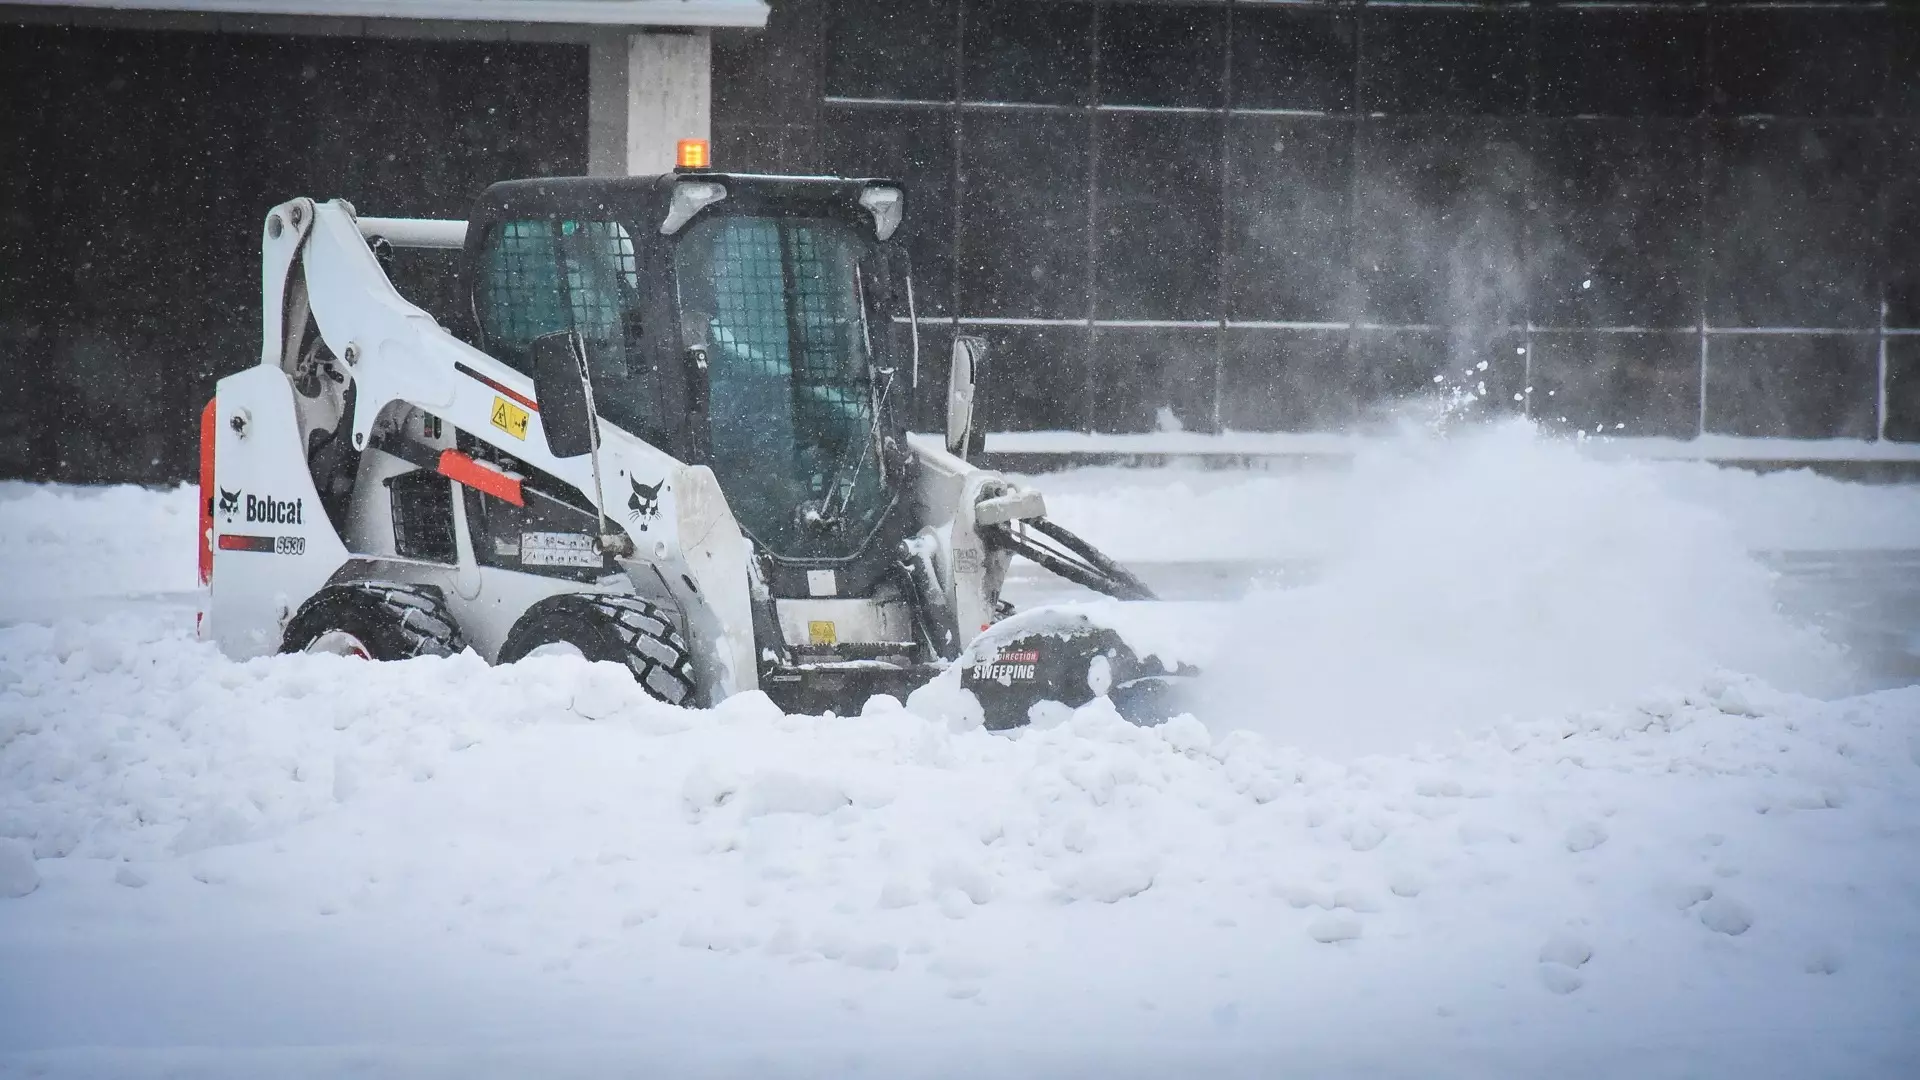 Руководство ДРЭУ Ижевска сменили из-за проблем с уборкой снега в городе